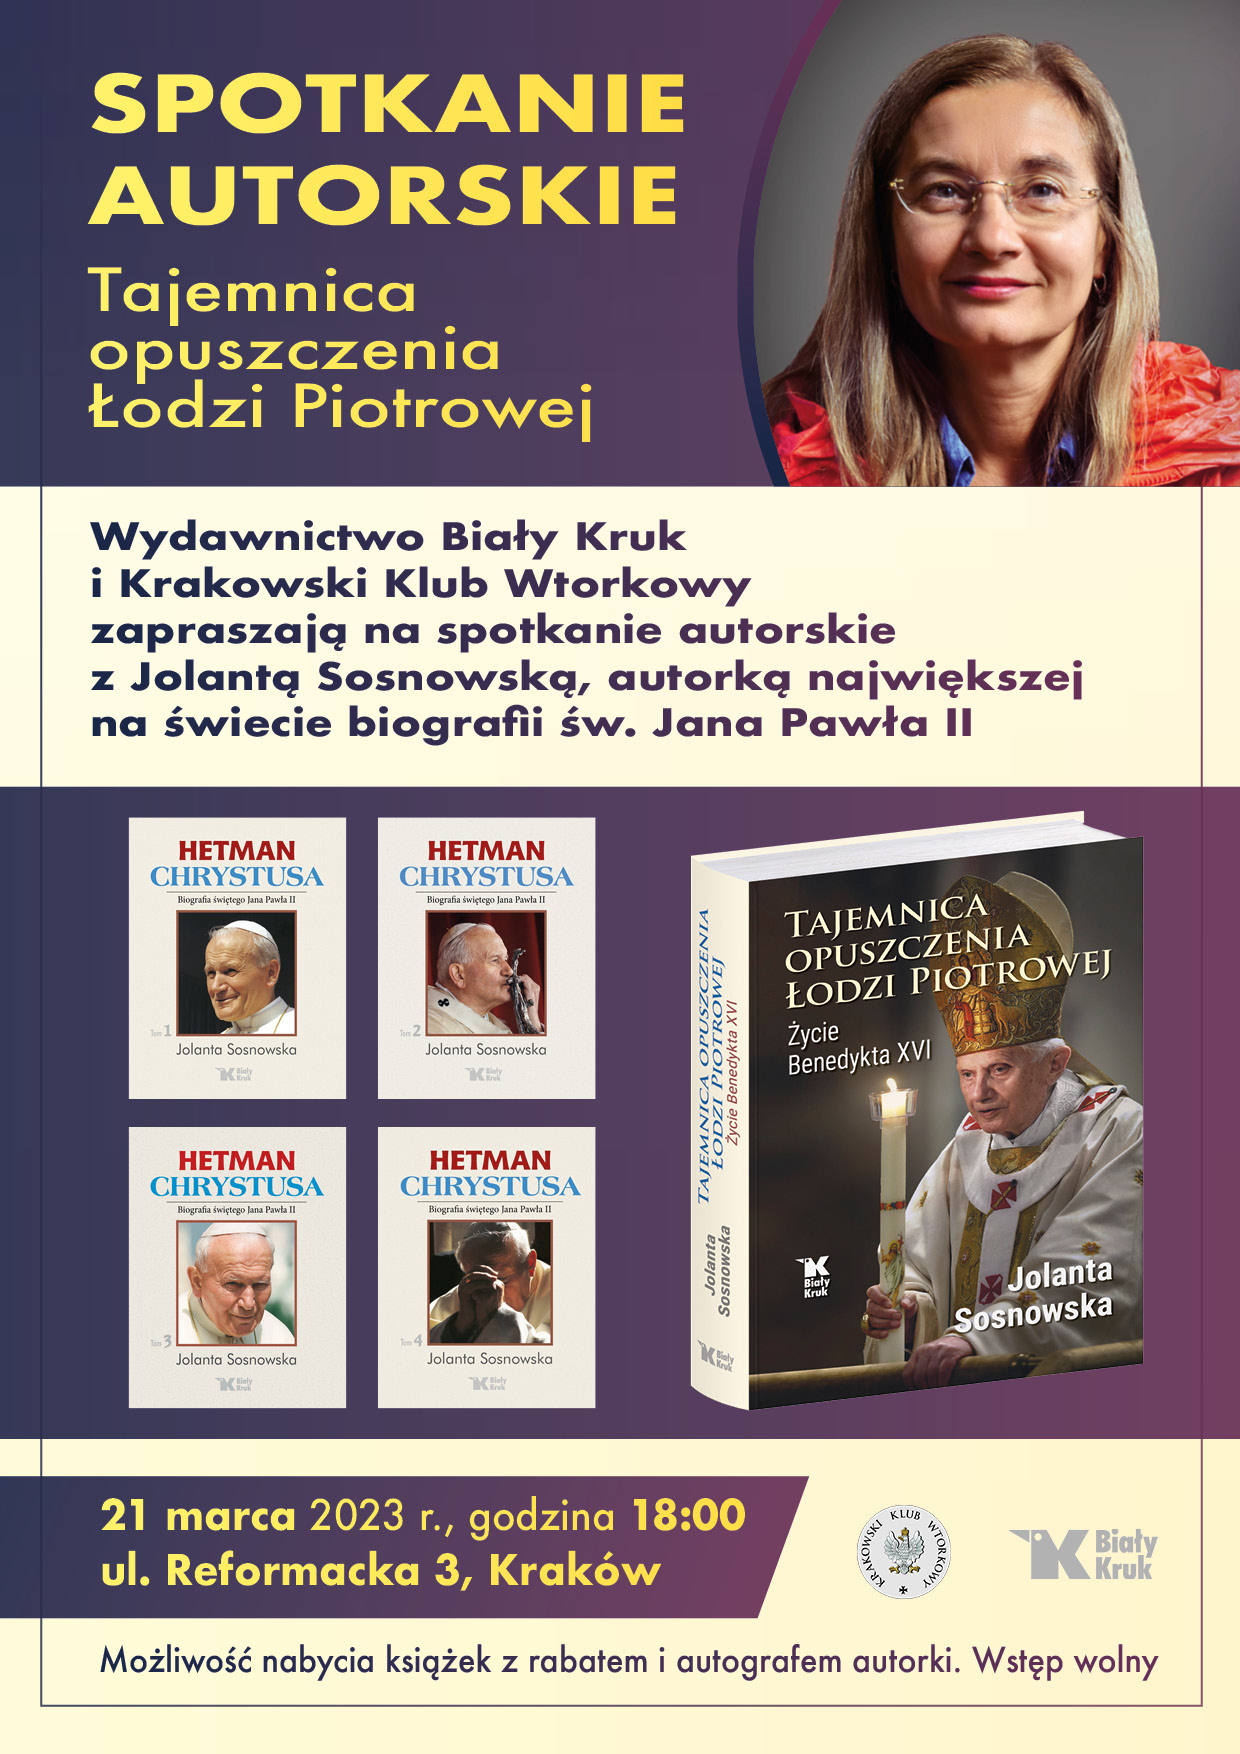 benedykt xvi 1 baner - „Tajemnica opuszczenia Łodzi Piotrowej” – spotkanie autorskie z Jolantą Sosnowską